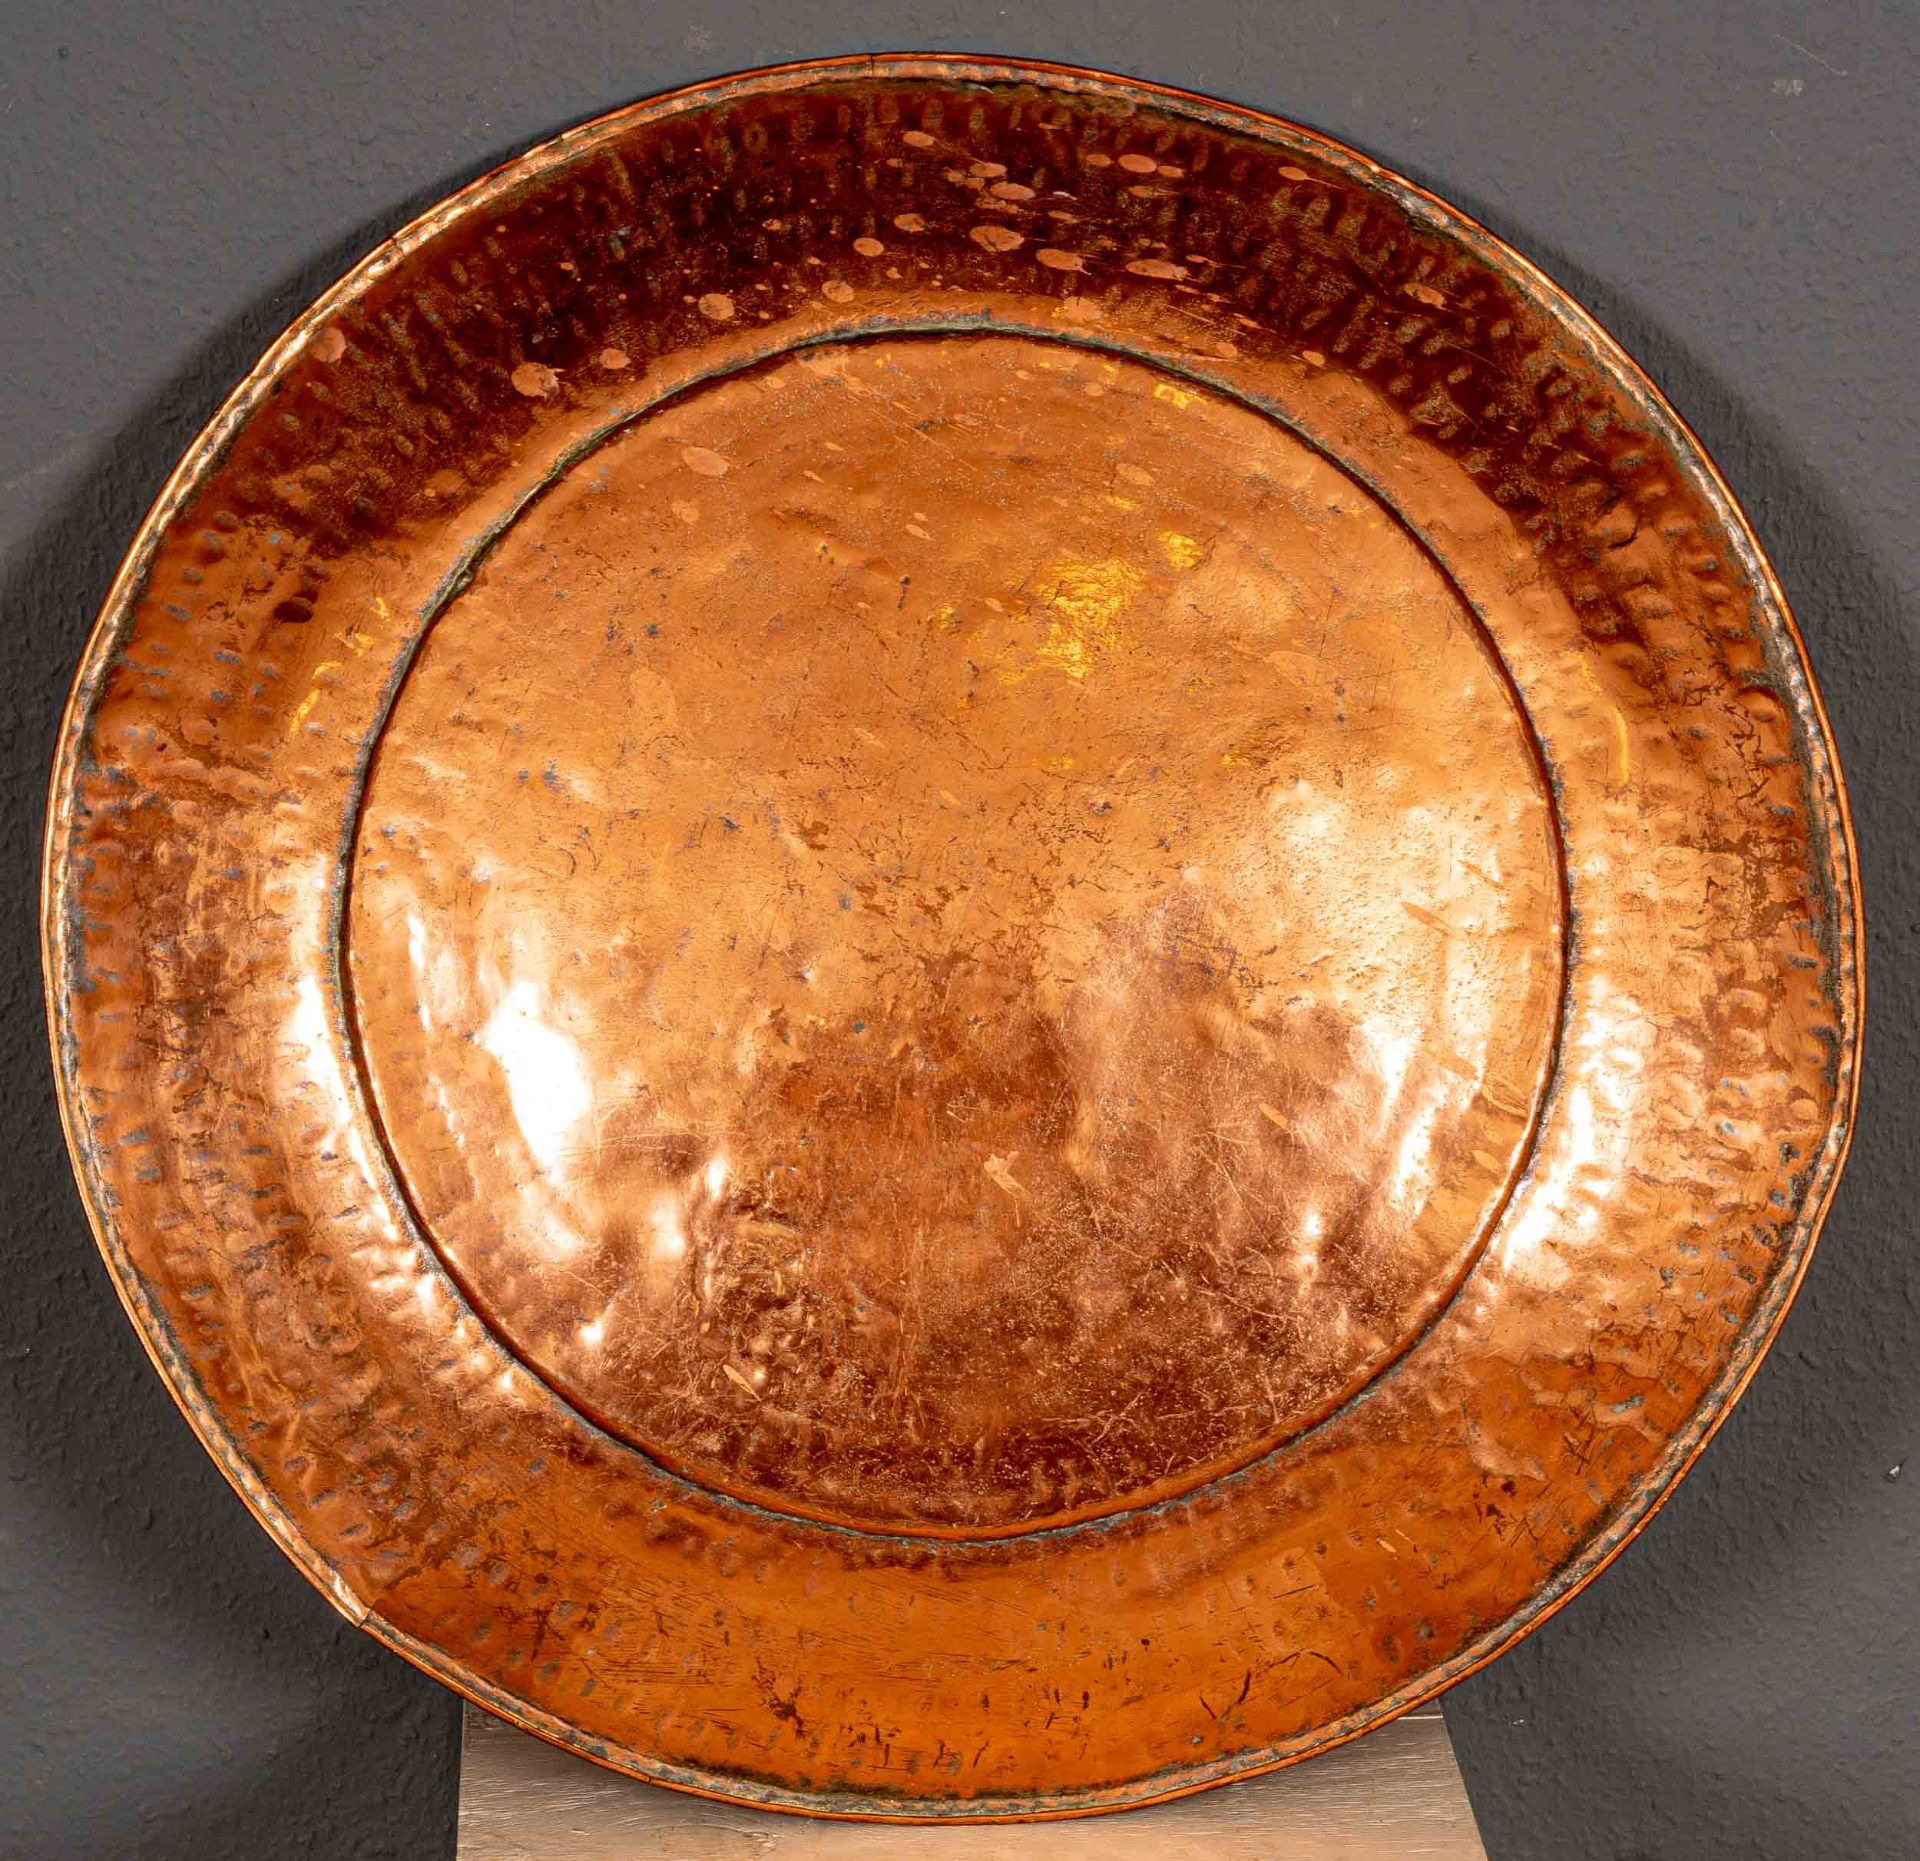 Sehr große Kupferplatte, bez.:"A 1 B", arabischer Raum, 20. Jhdt., Durchmesser ca. 71 cm. - Image 2 of 7